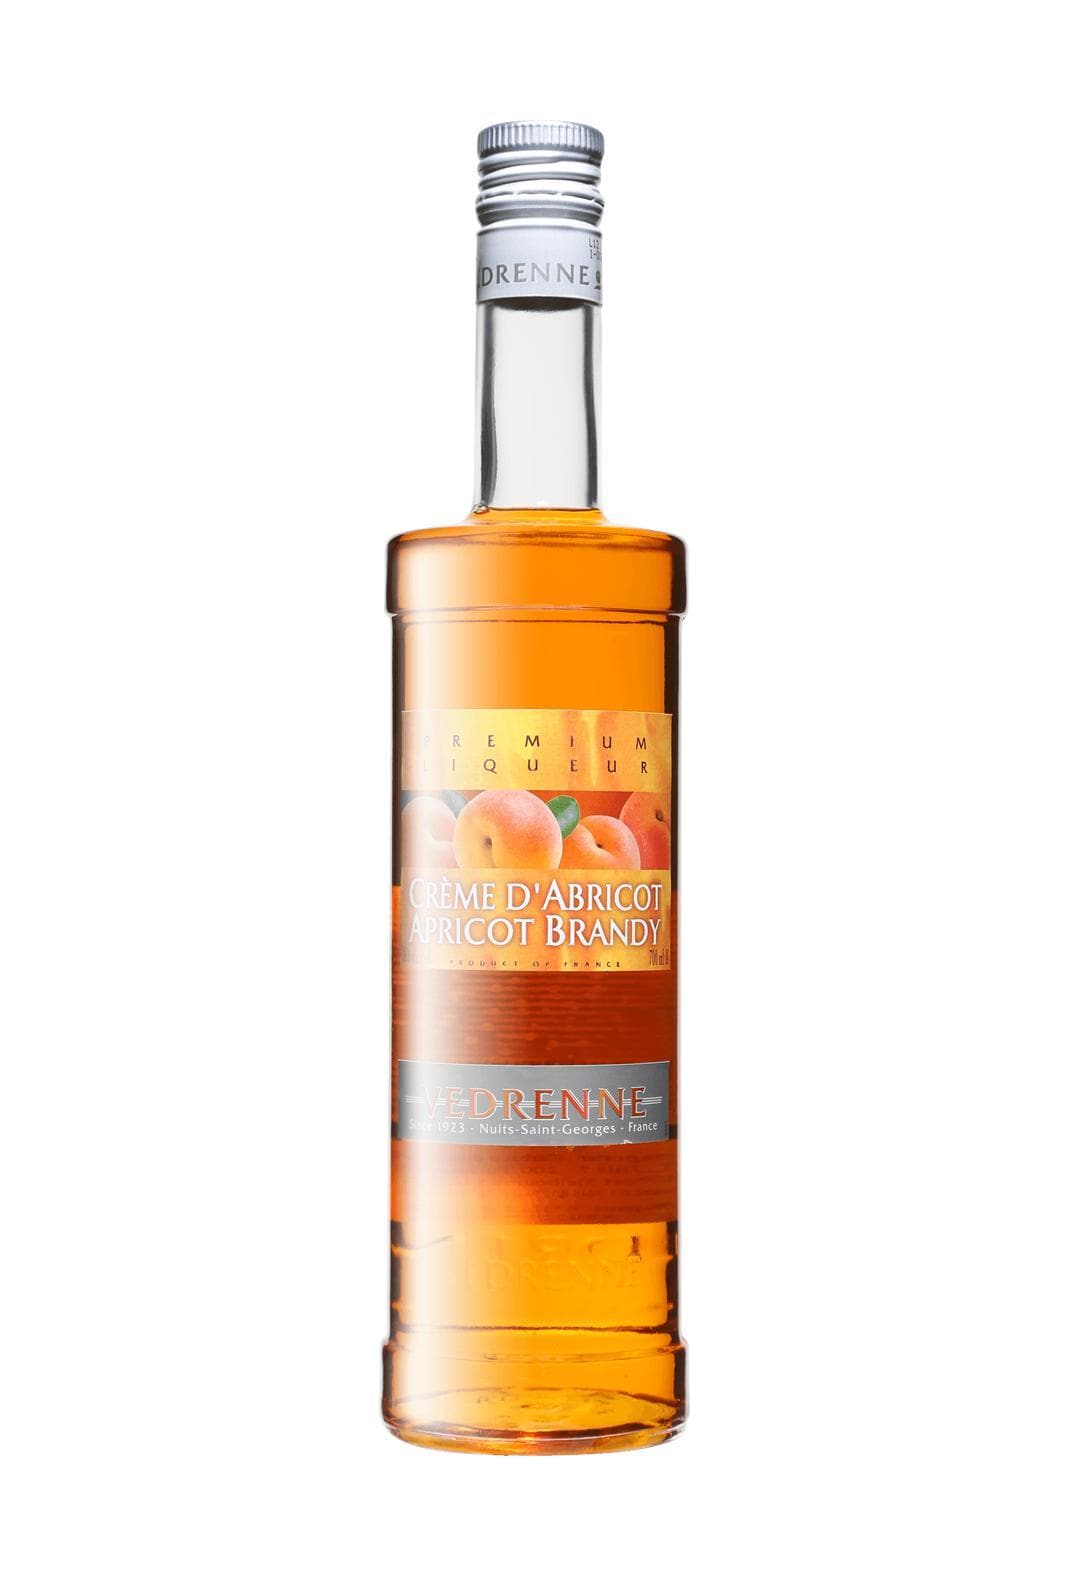 Vedrenne Liqueur d'Apricot (Apricot) 16% 700ml | Liqueurs | Shop online at Spirits of France